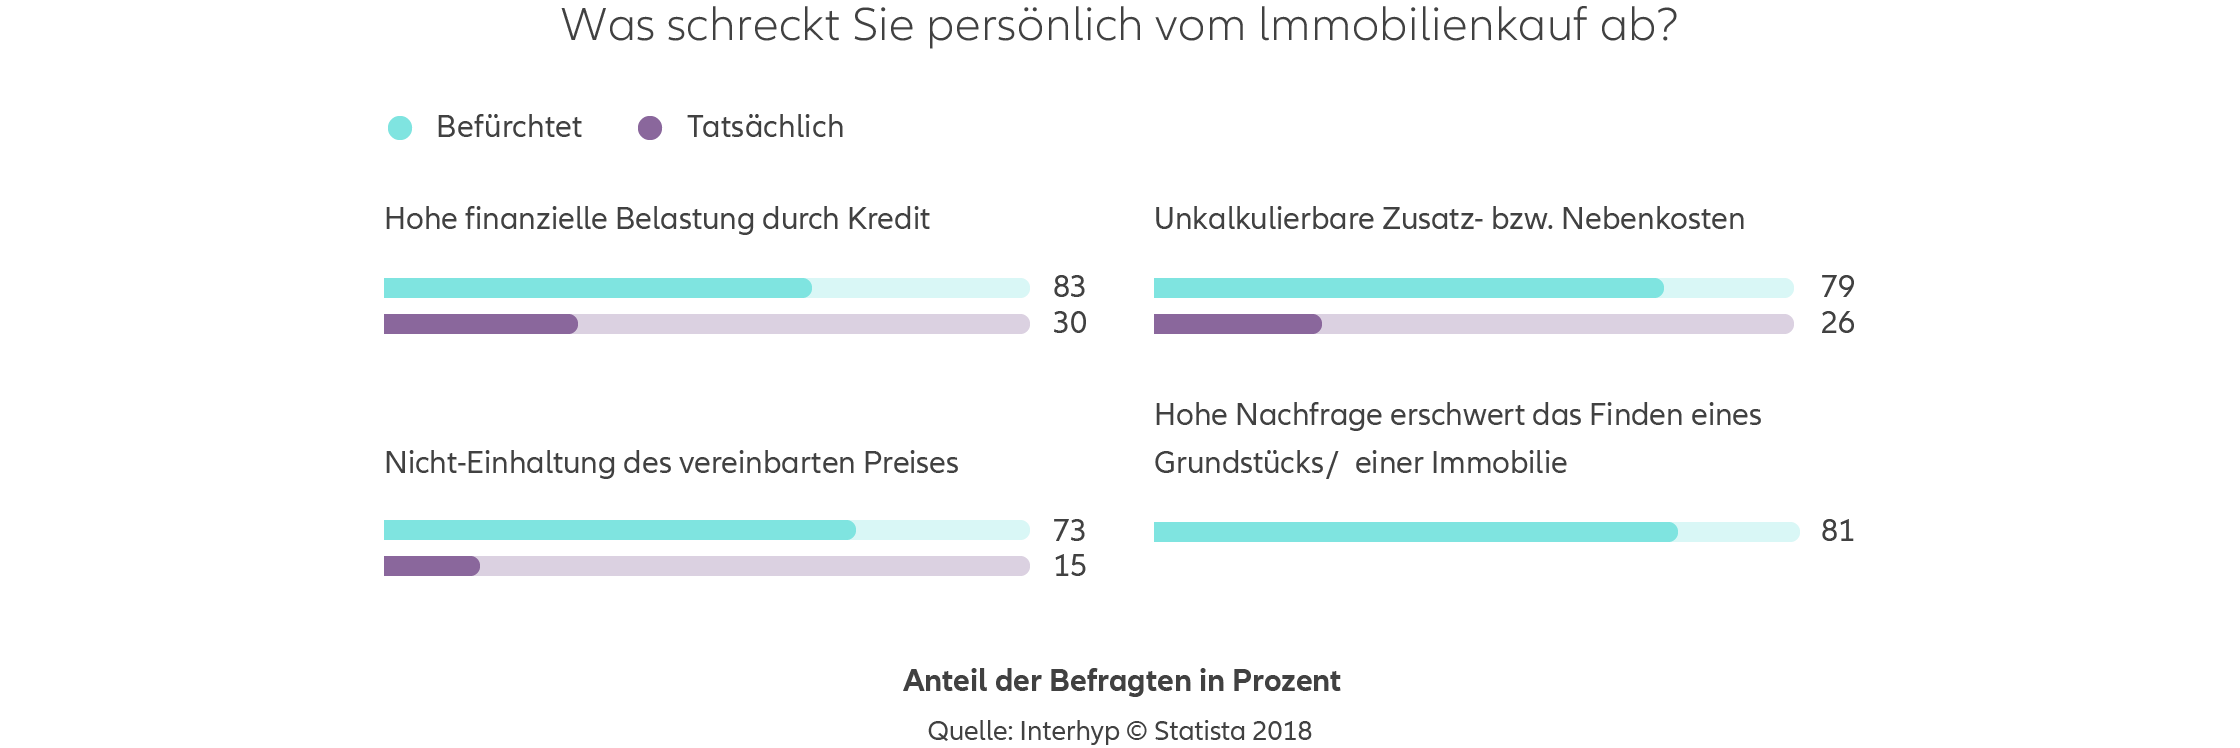 Allianz - Agentursuche Baufinanzierung Köln - Infografik: Umfrage zu den Bedenken beim Immobilienkauf in Deutschland